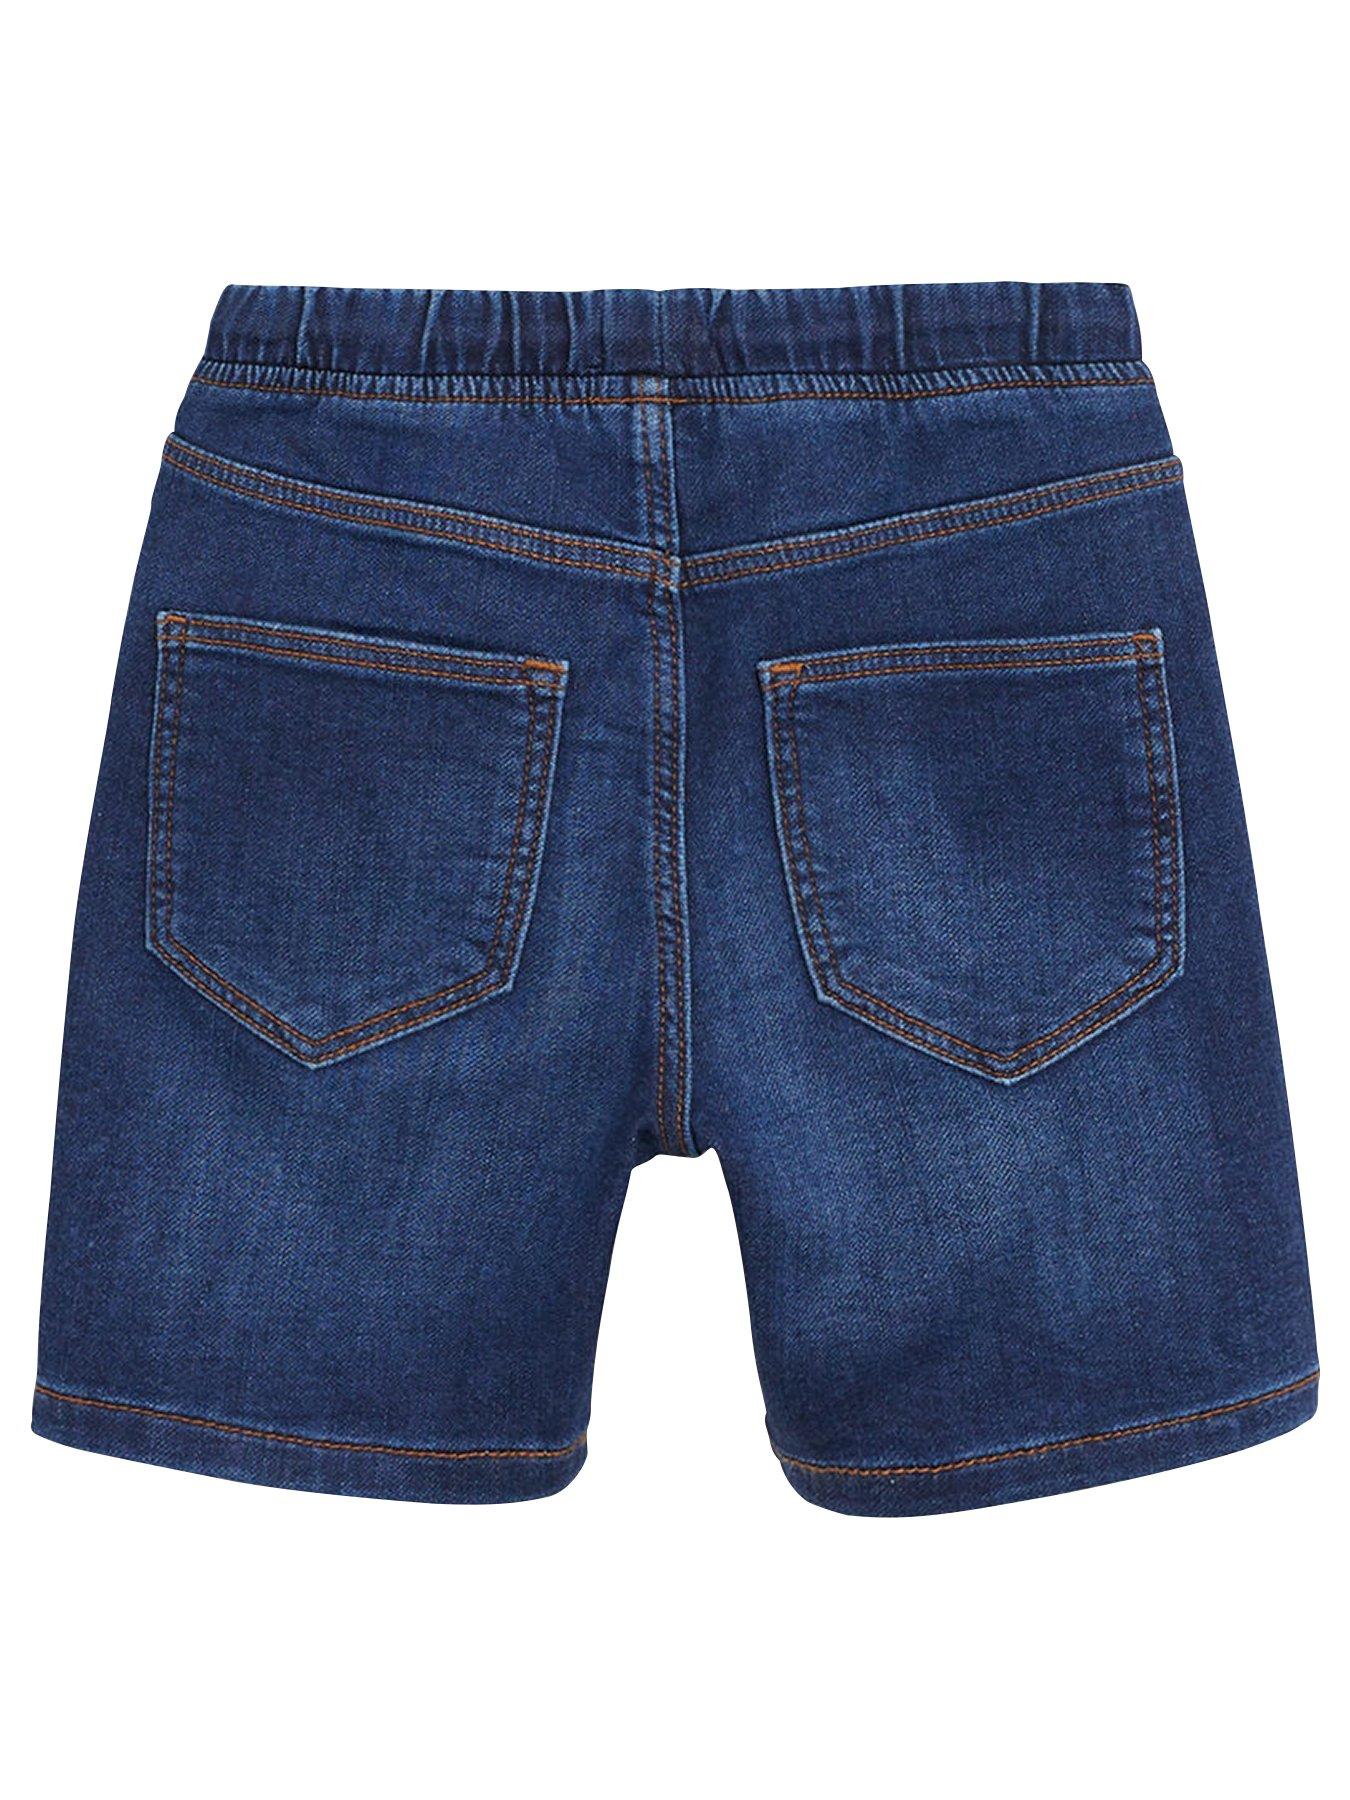 denim shorts dark blue